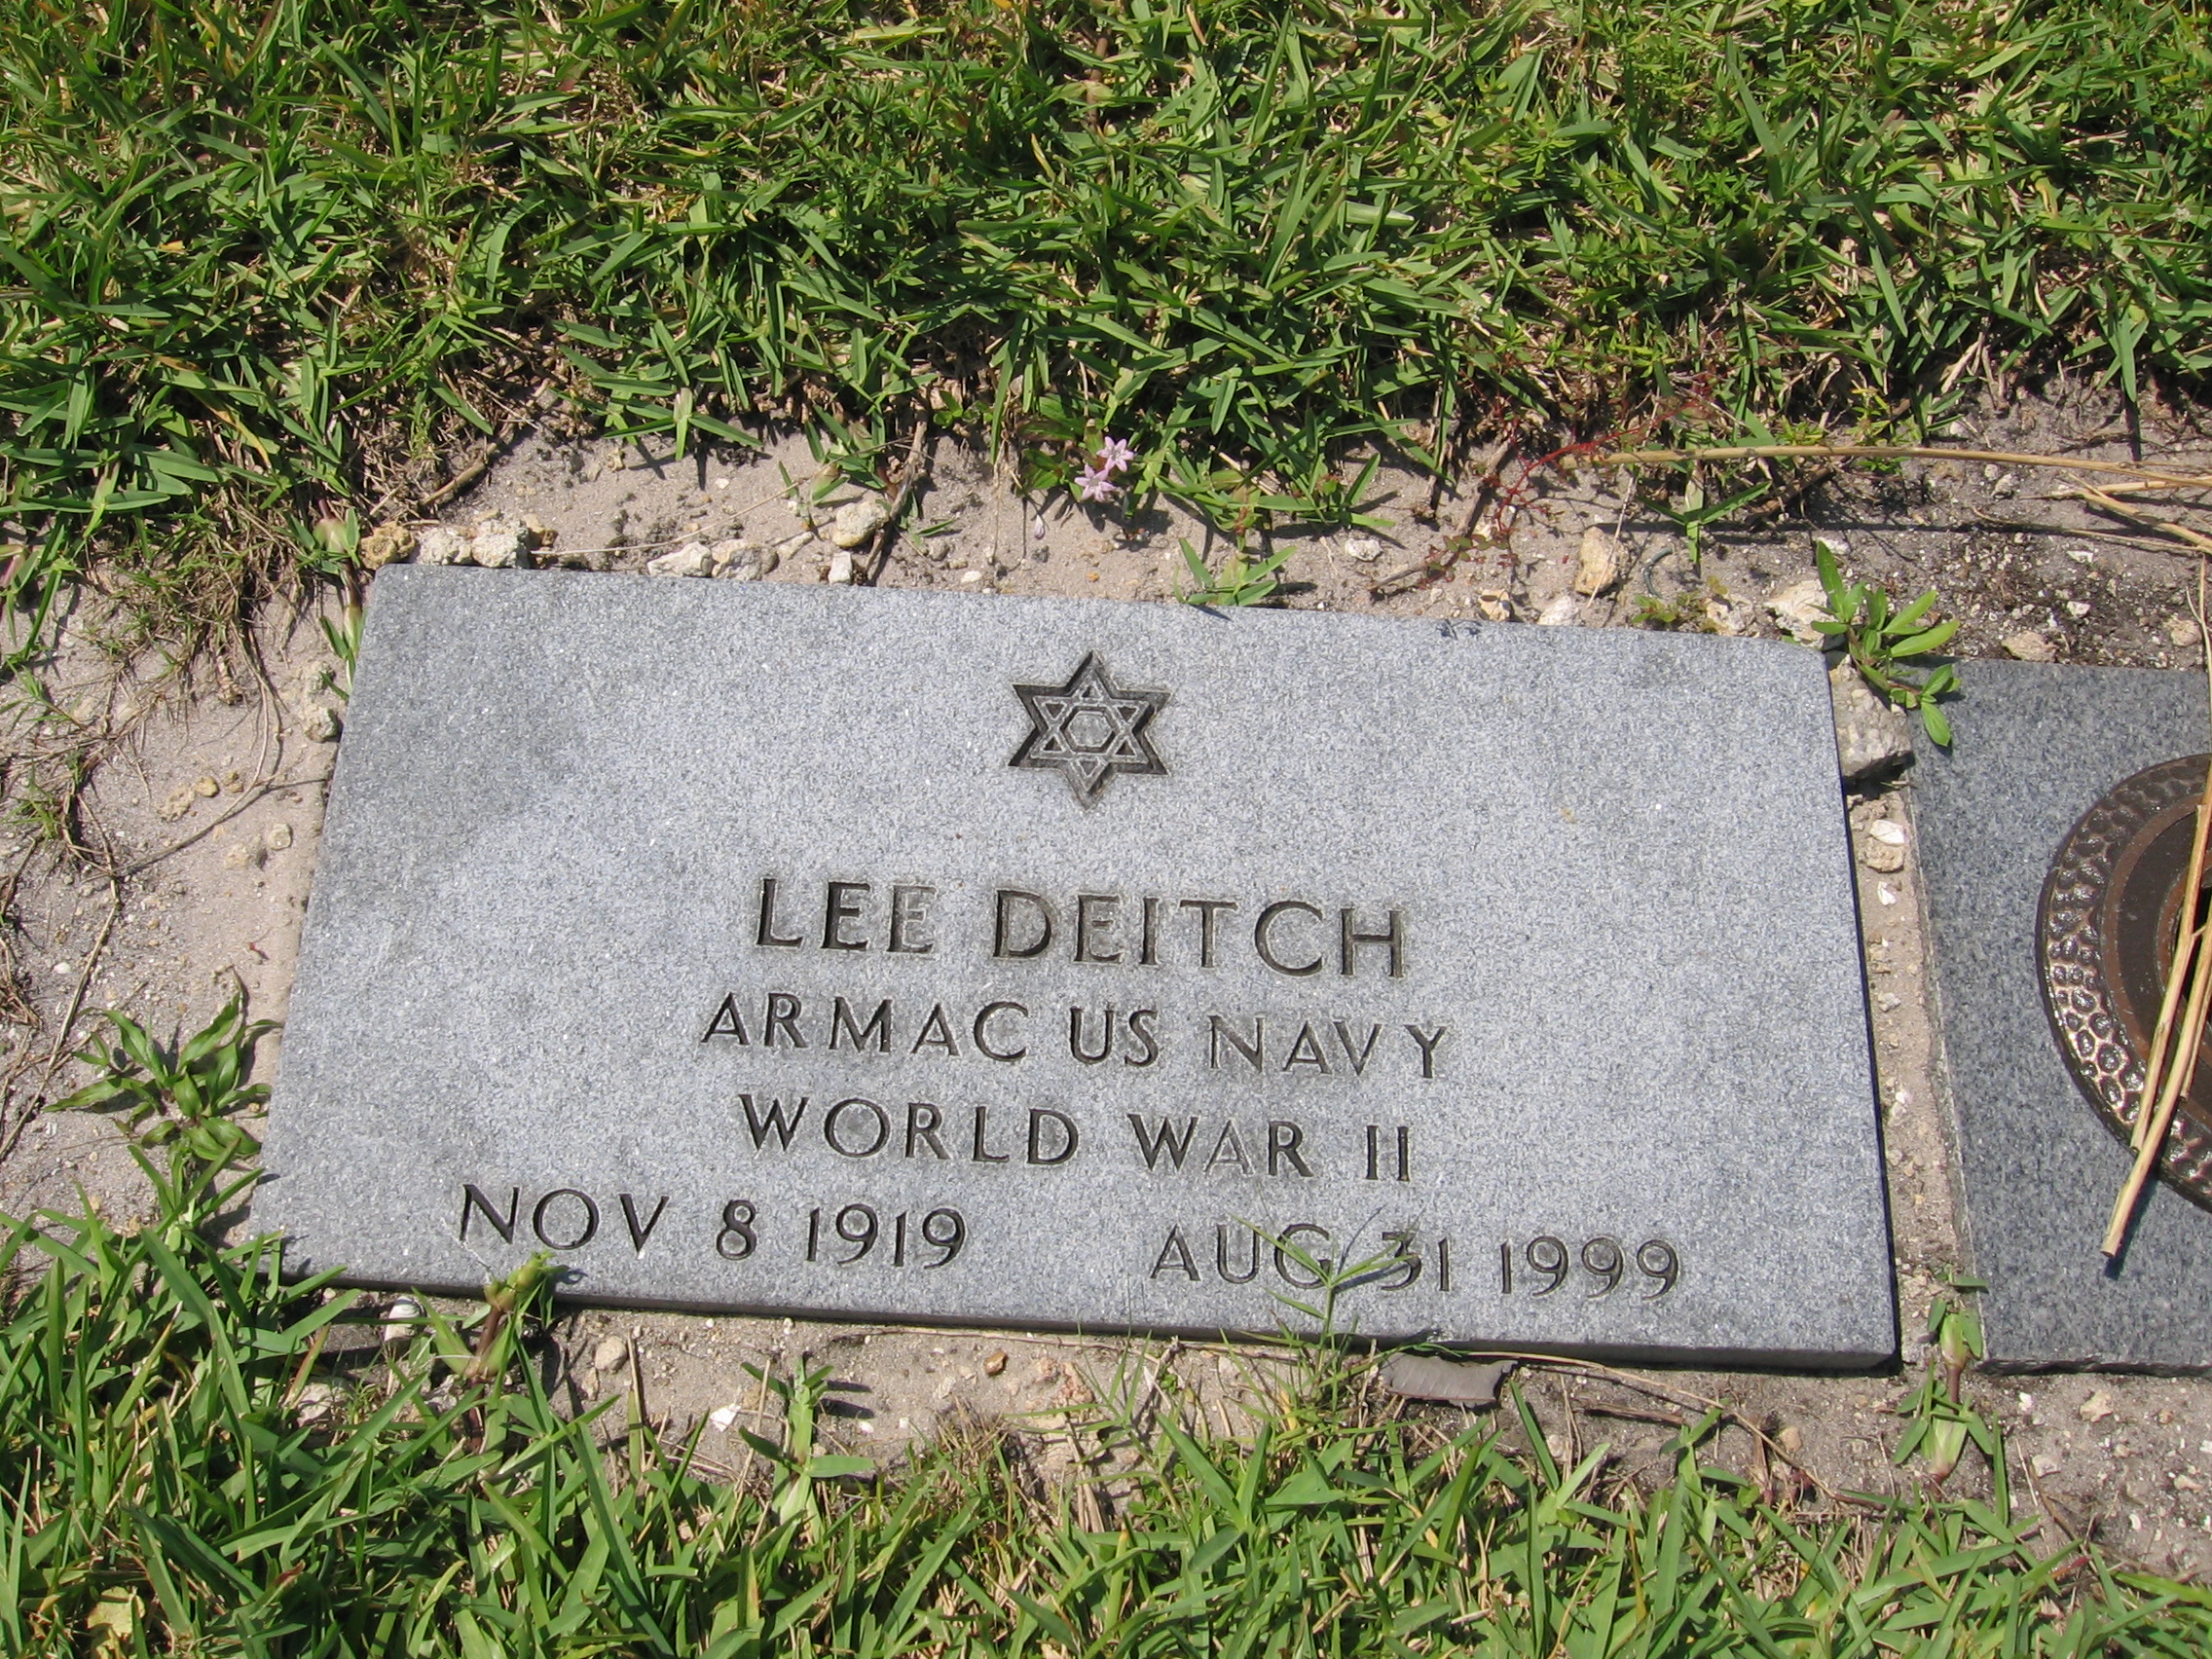 Lee Deitch